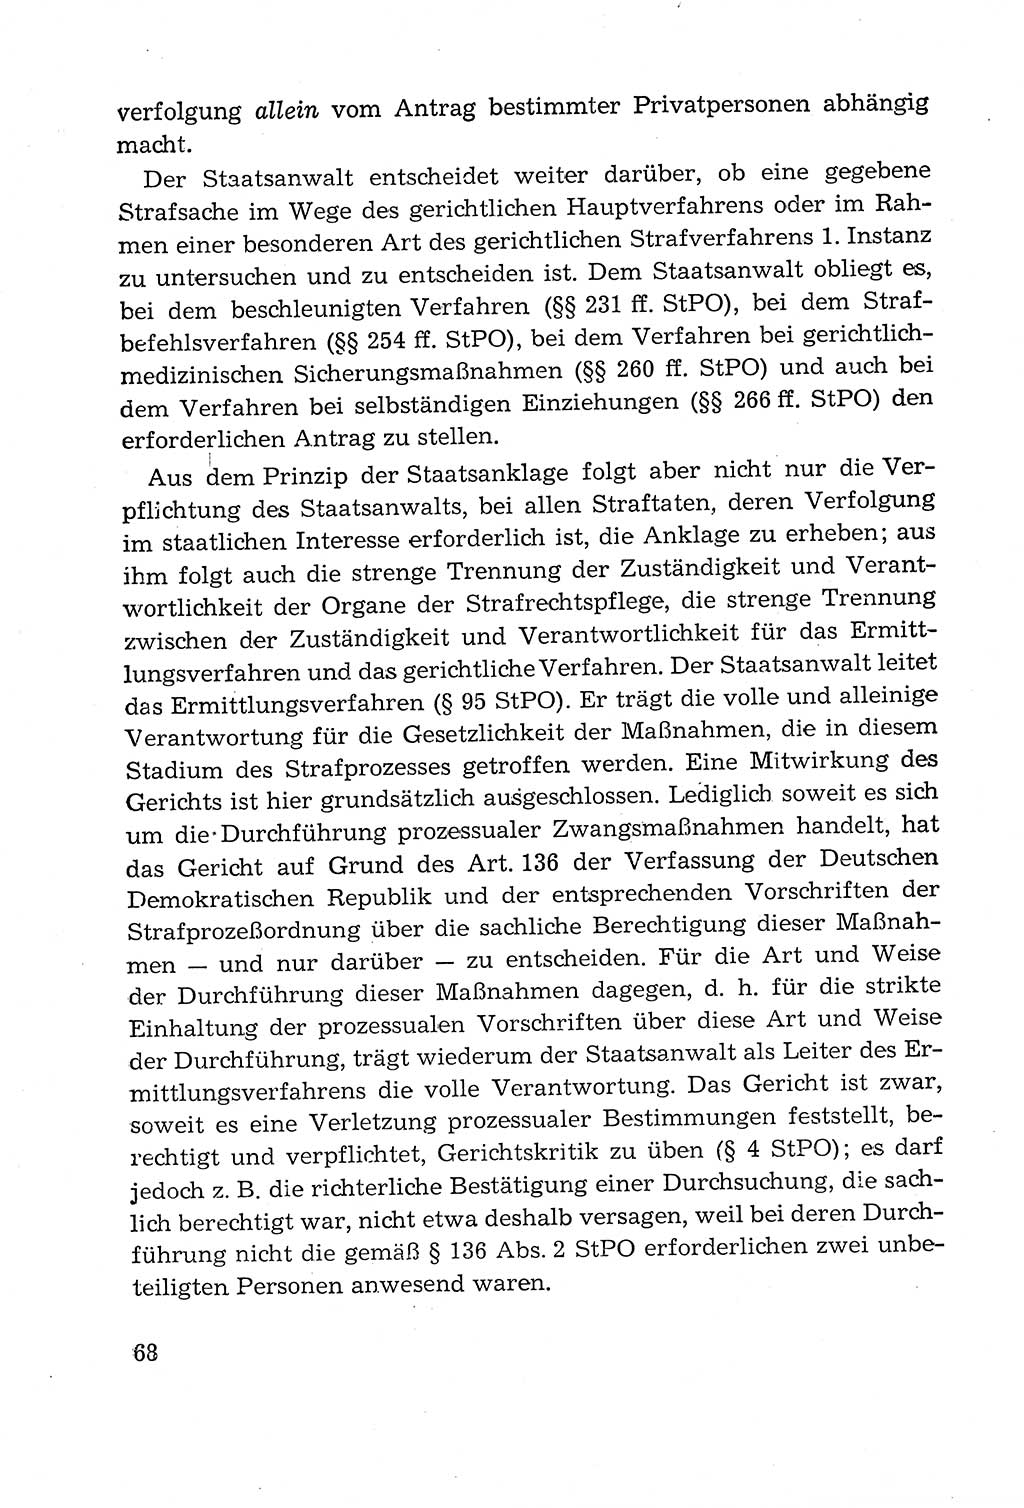 Leitfaden des Strafprozeßrechts der Deutschen Demokratischen Republik (DDR) 1959, Seite 68 (LF StPR DDR 1959, S. 68)